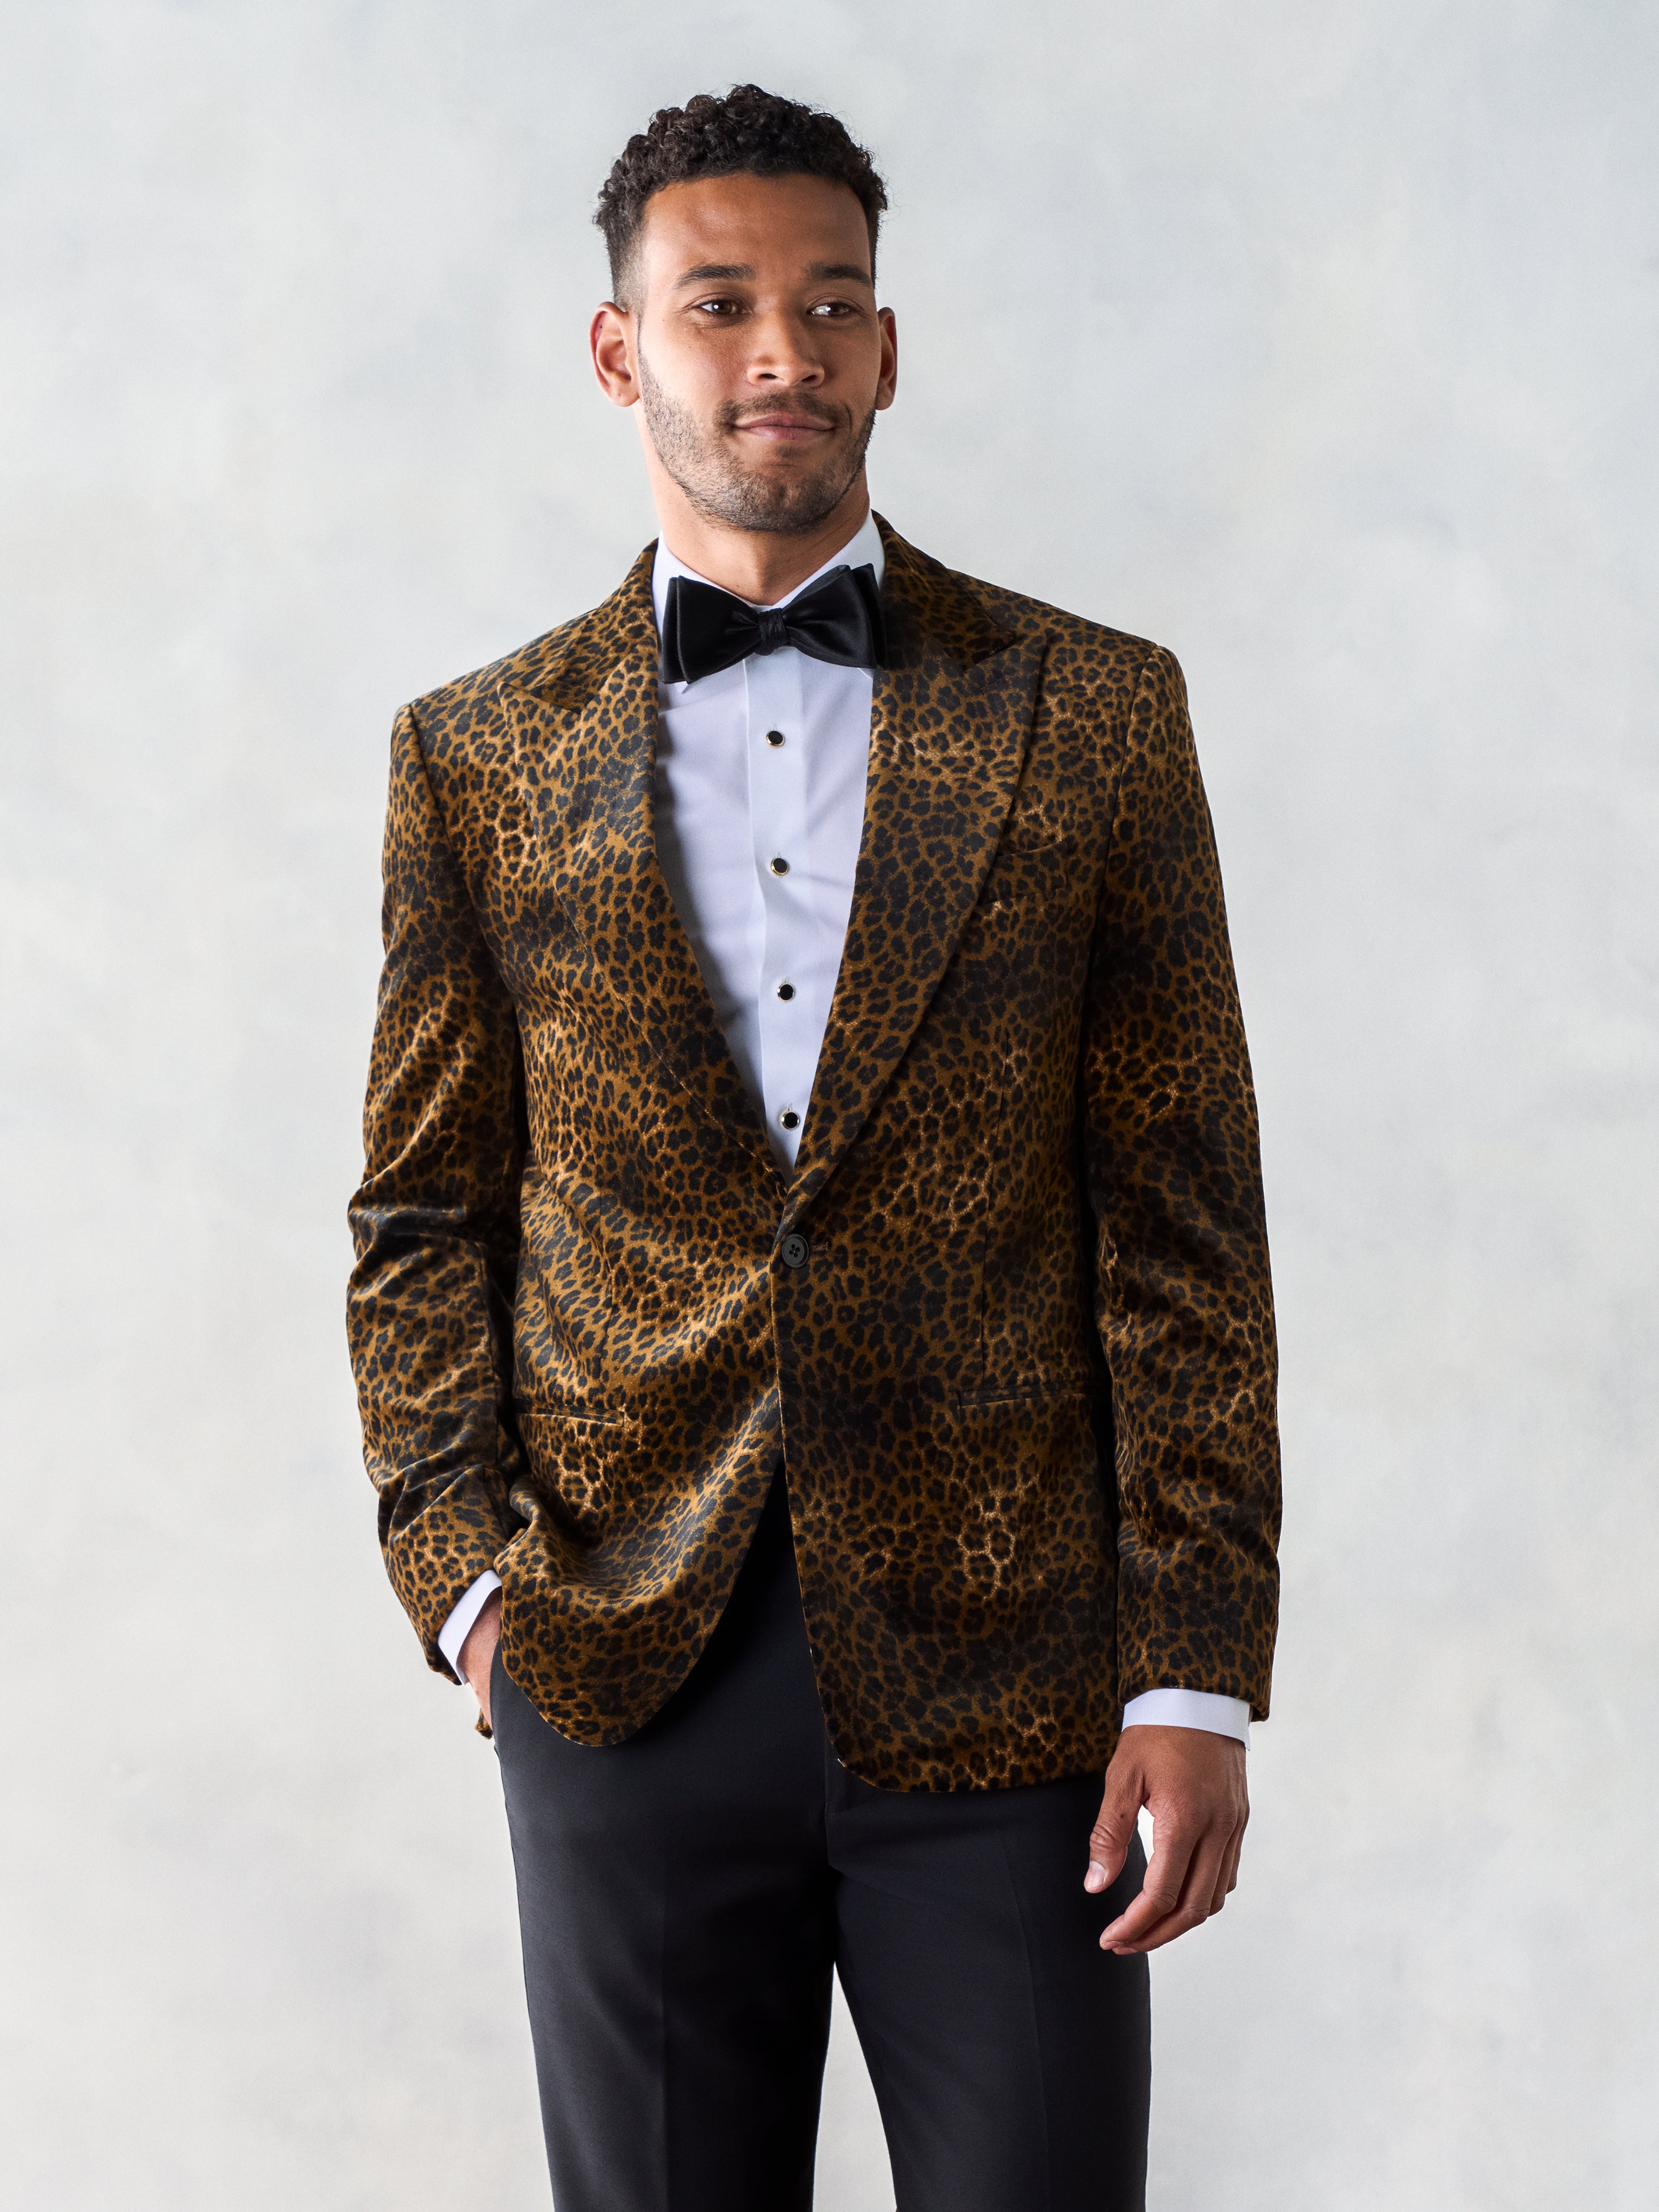 Suit vs. Tuxedo vs. Statement blazer Nairobi Kenya - King Sidney